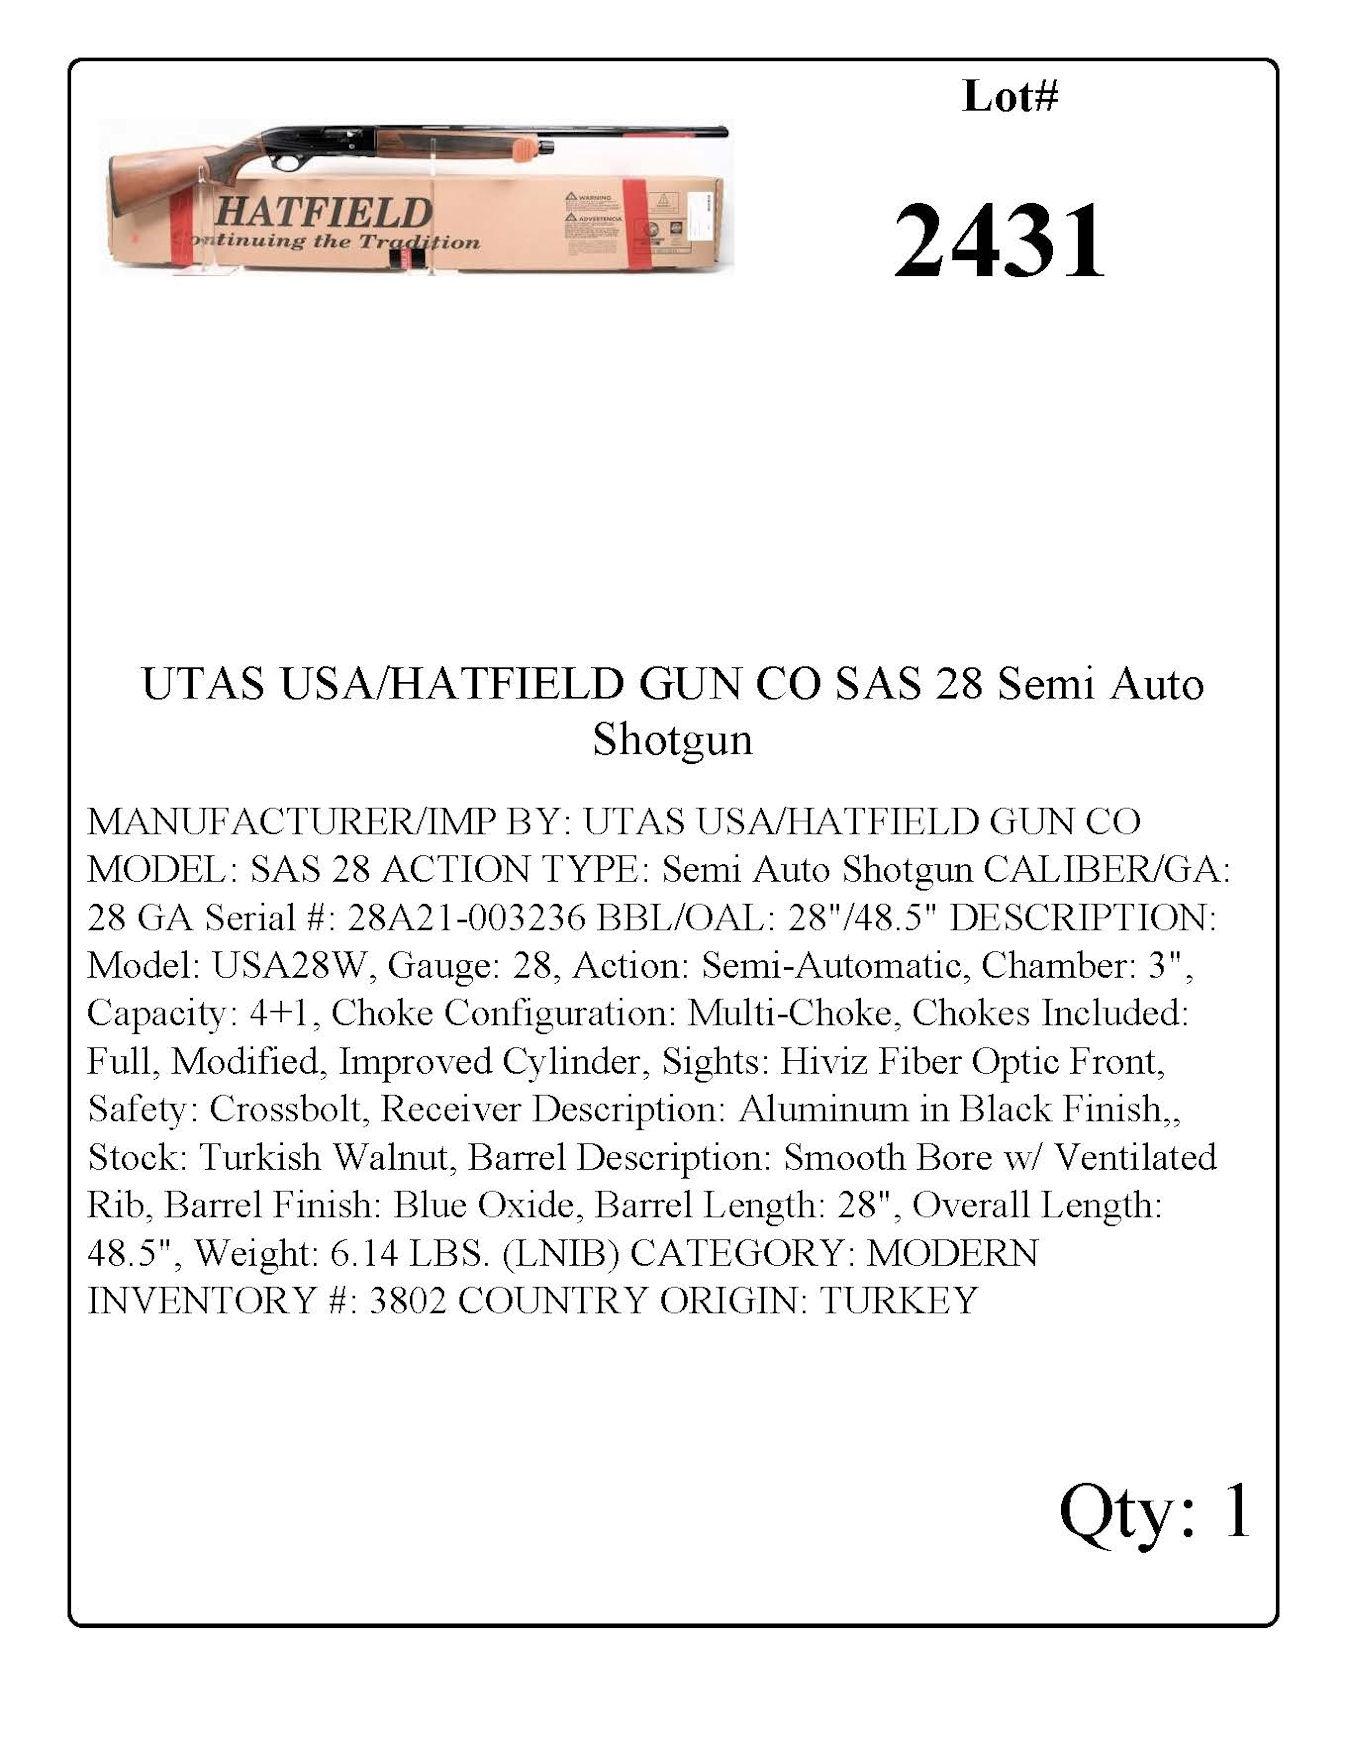 UTAS USA/HATFIELD GUN CO SAS 28 Semi Auto Shotgun